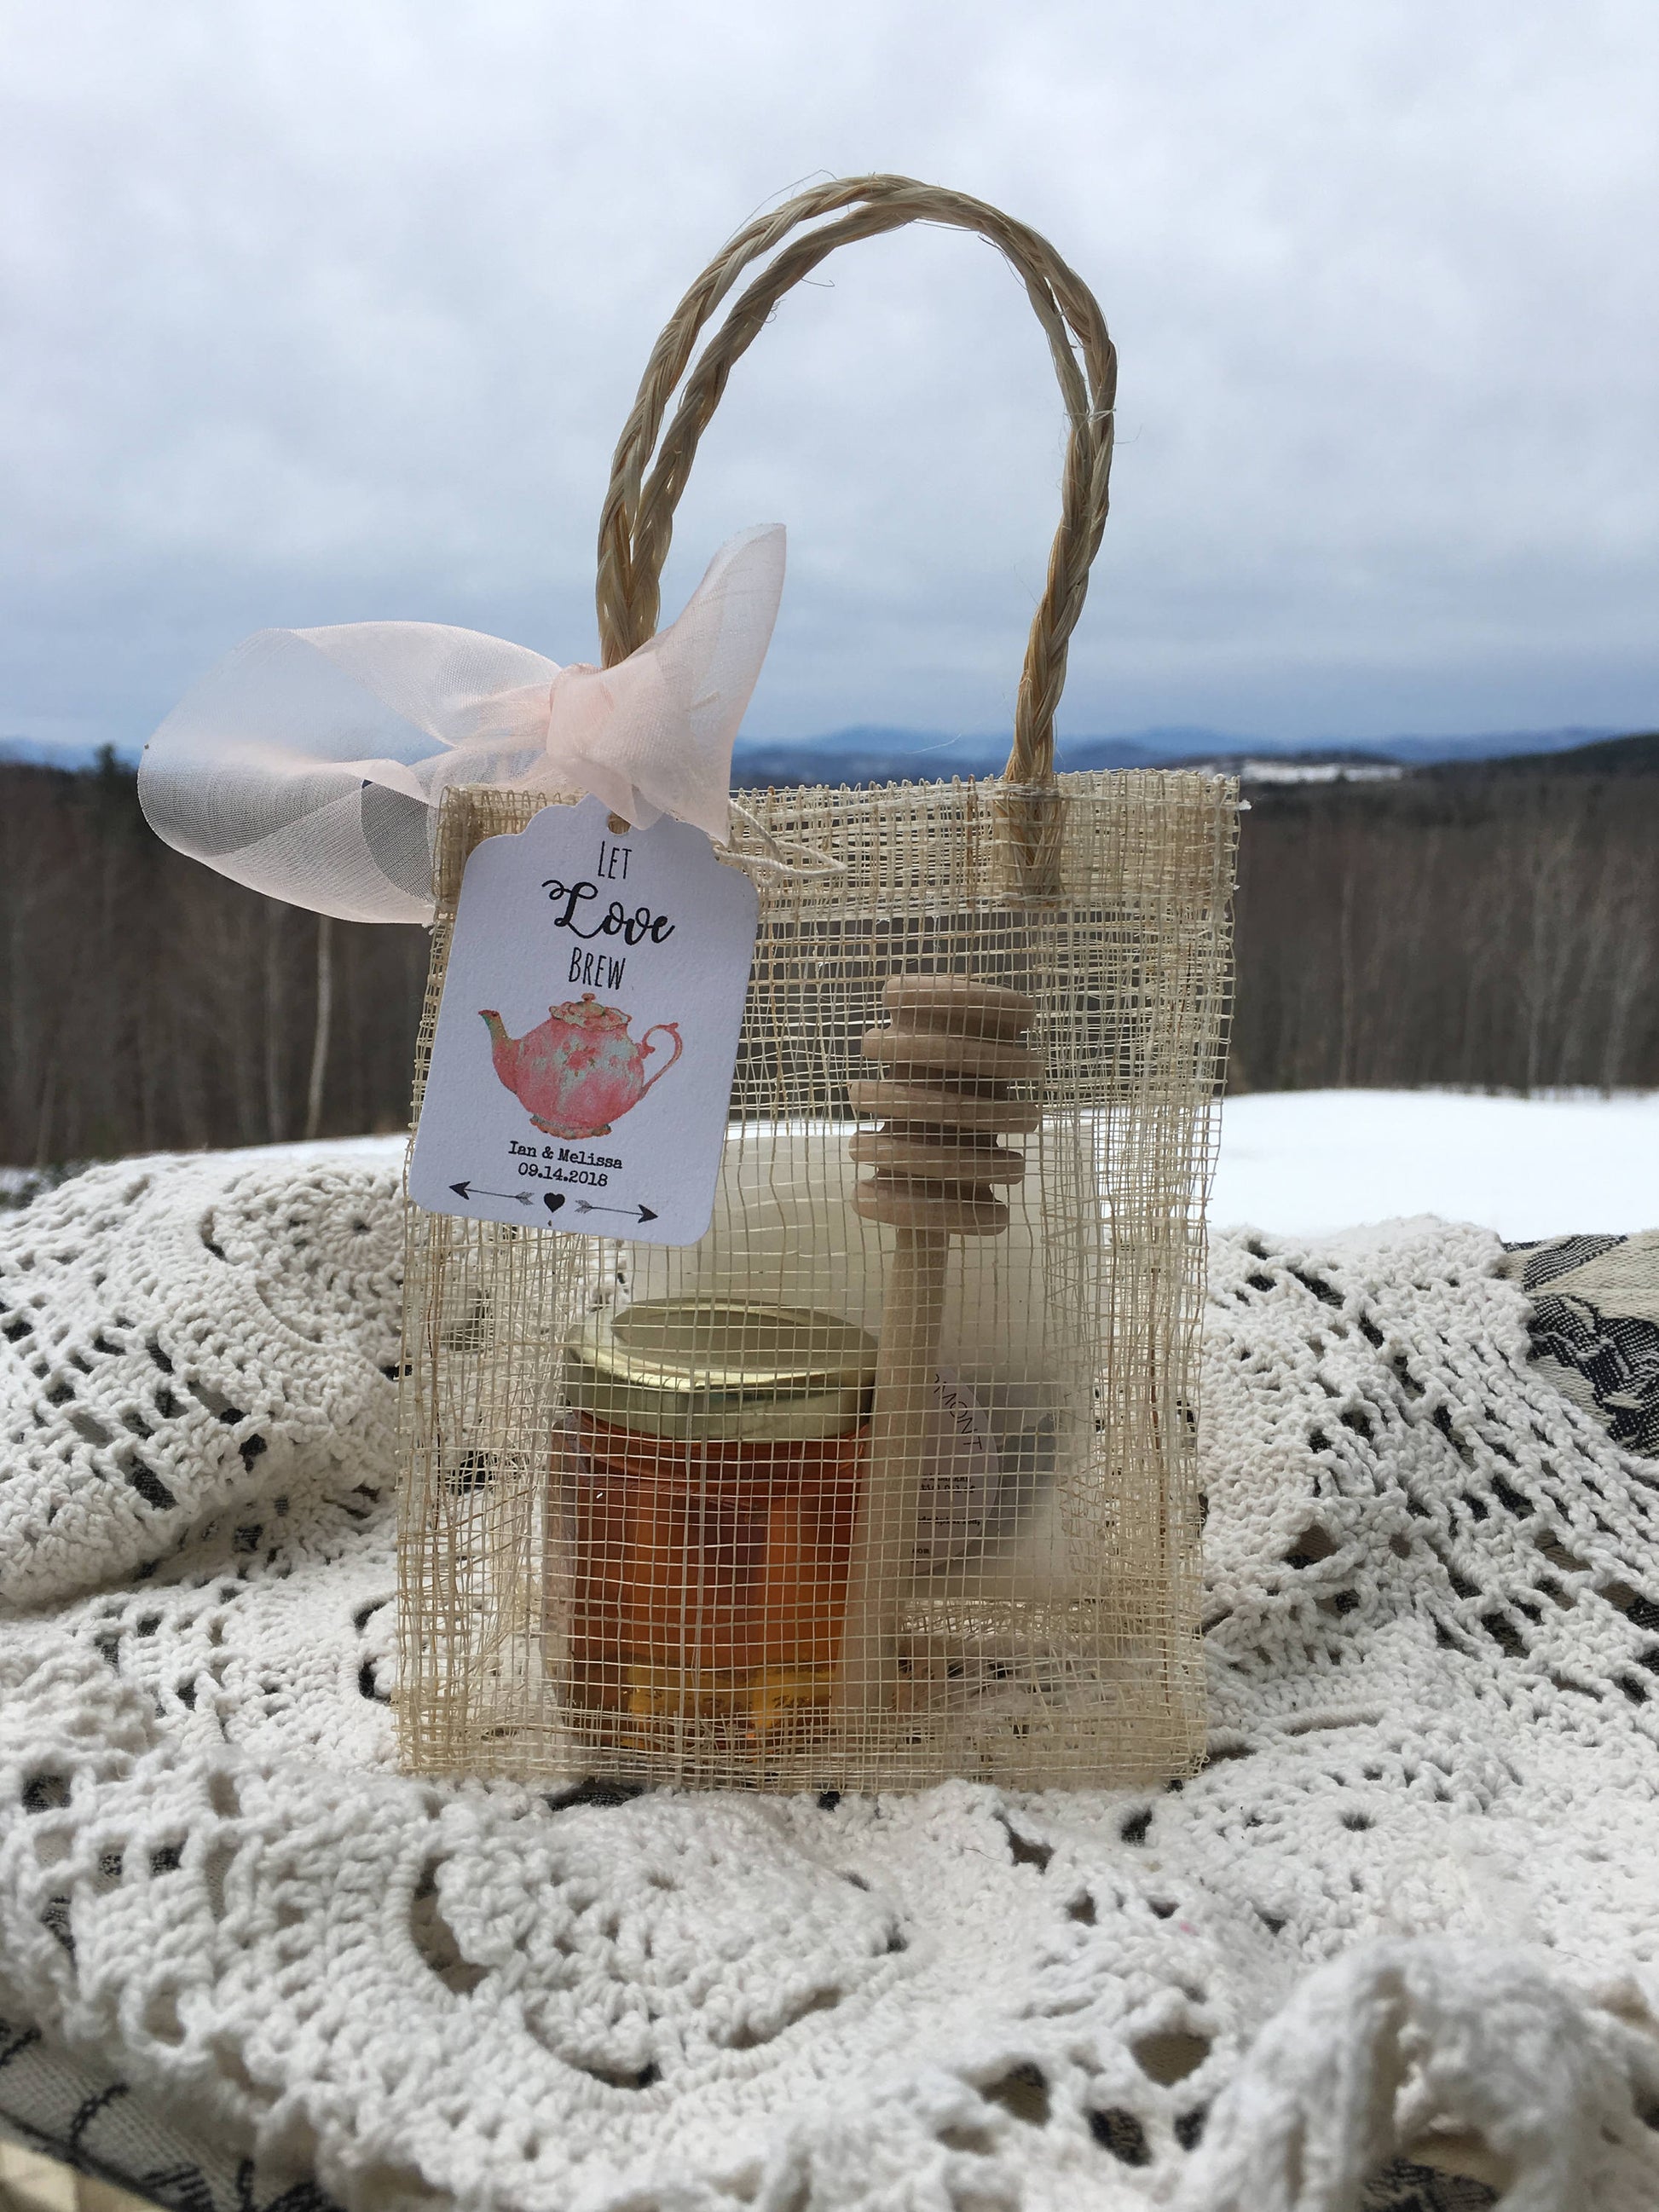 Tea Party Favor - Tea and Honey - Bridal Tea - Baby Shower Tea - Belle Savon Vermont